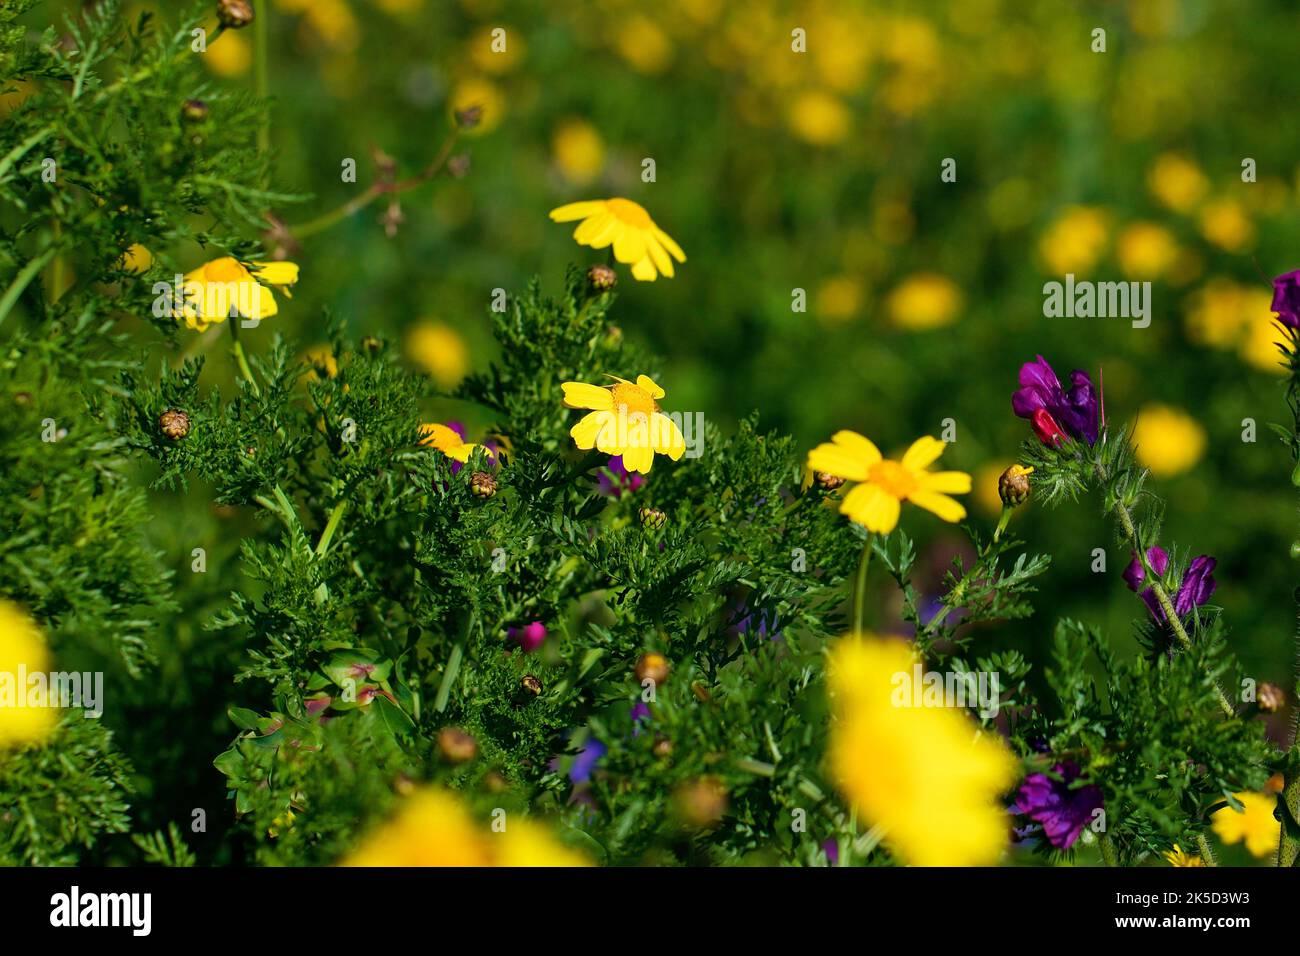 Italy, Sicily, Zingaro National Park, spring, spring meadow, macro, yellow flowers Stock Photo